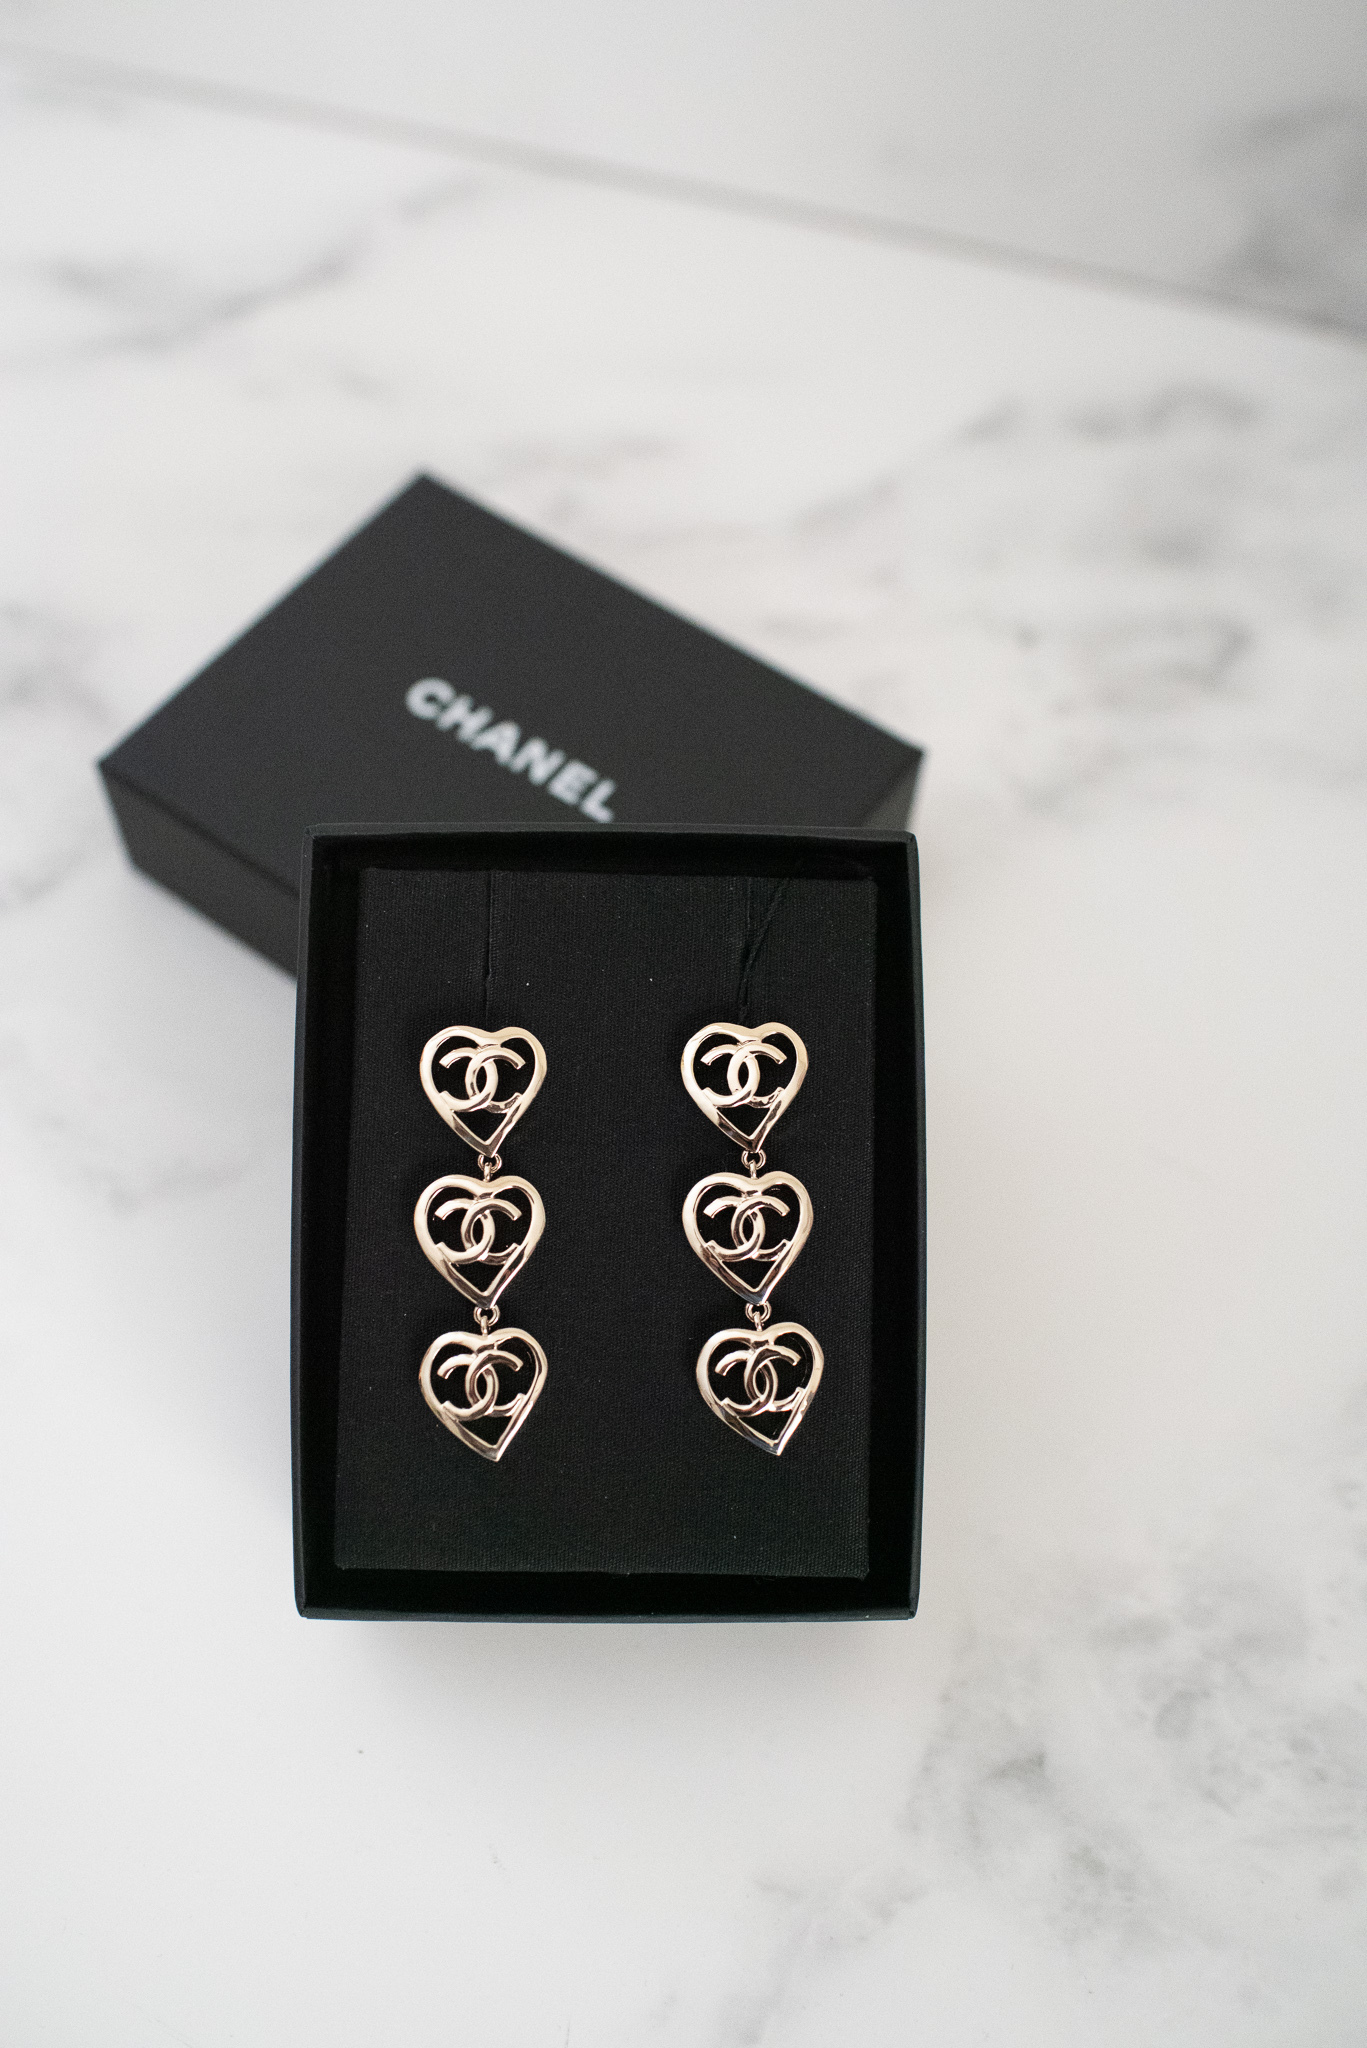 Chanel CC Triple Heart Drop Earrings in Gold, New in Box GA003 MA001